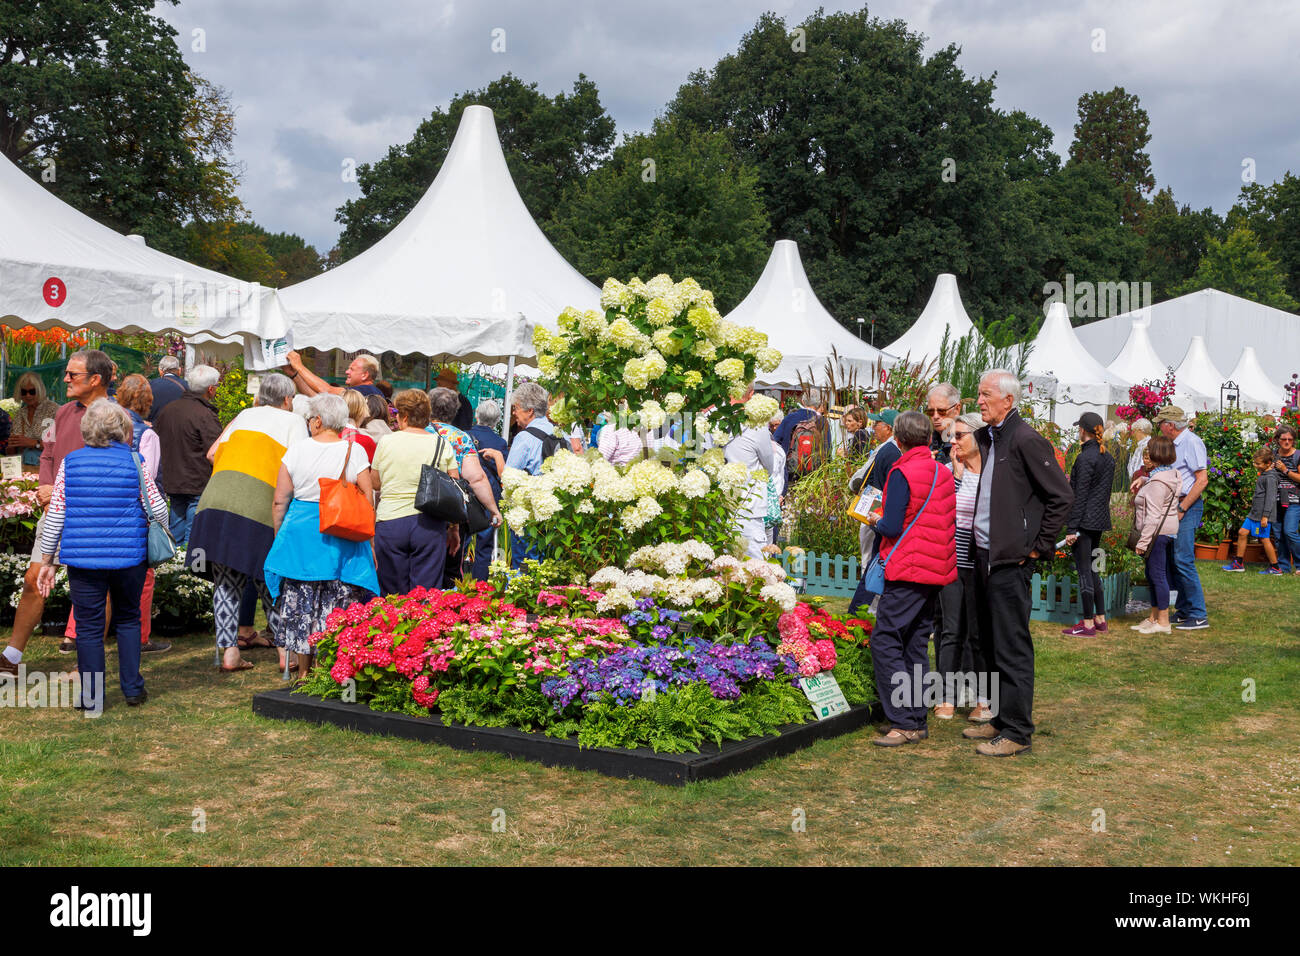 Affichage de fleurs avec hyderangea 'Limelight' au mois de septembre 2019 La fleur de Jardin Wisley RHS Garden Show à Wisley, Surrey, au sud-est de l'Angleterre Banque D'Images